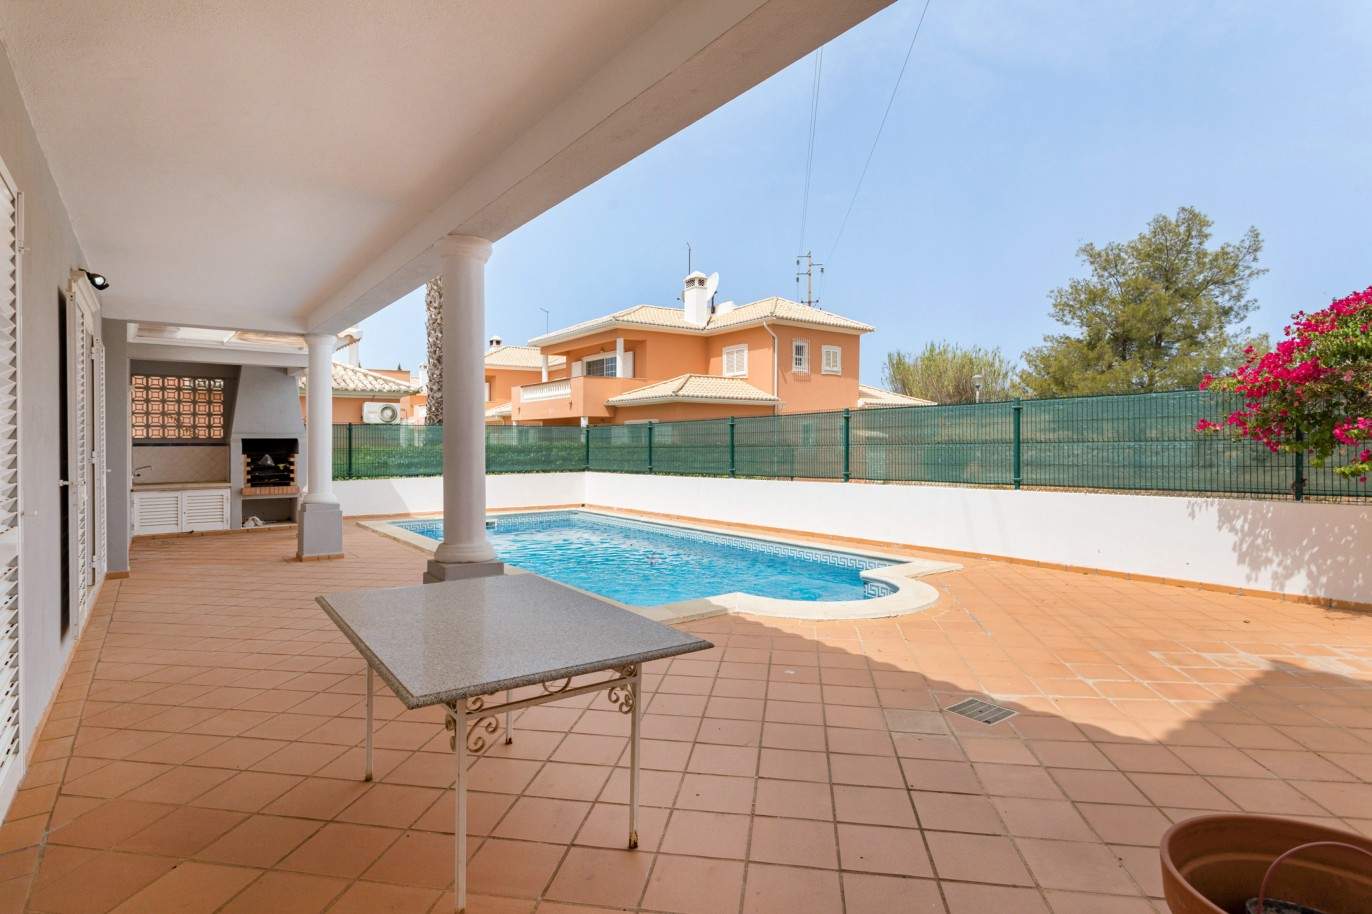 4 Bedroom Villa with pool à vendre à Quarteira, Algarve_201730